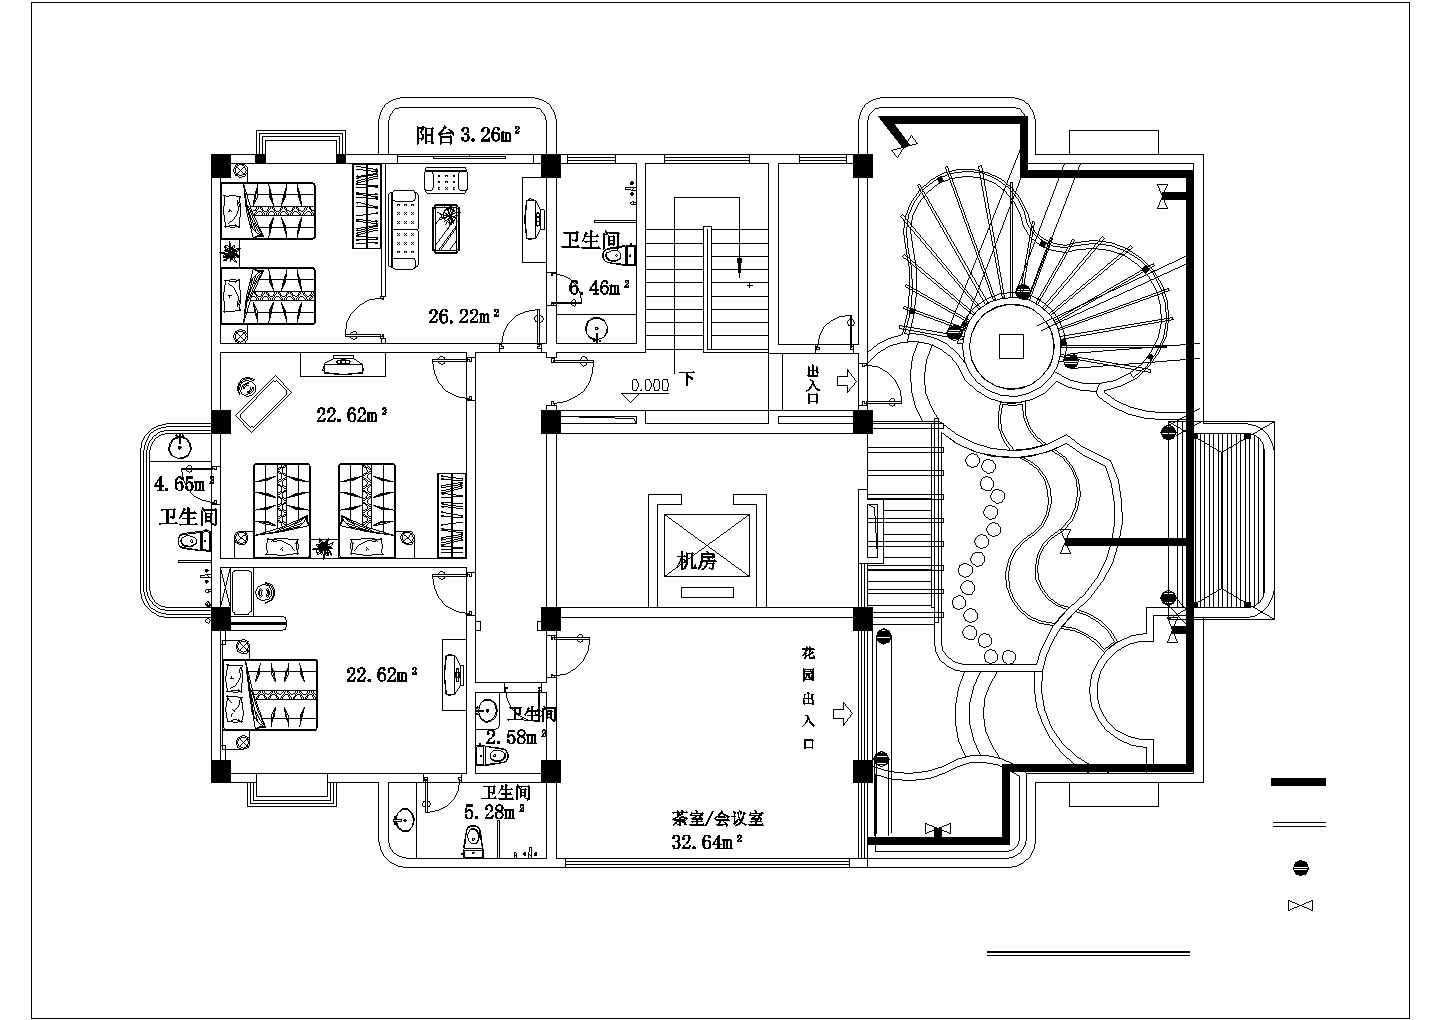 屋顶花园CAD平面图-宿舍楼十楼施工图